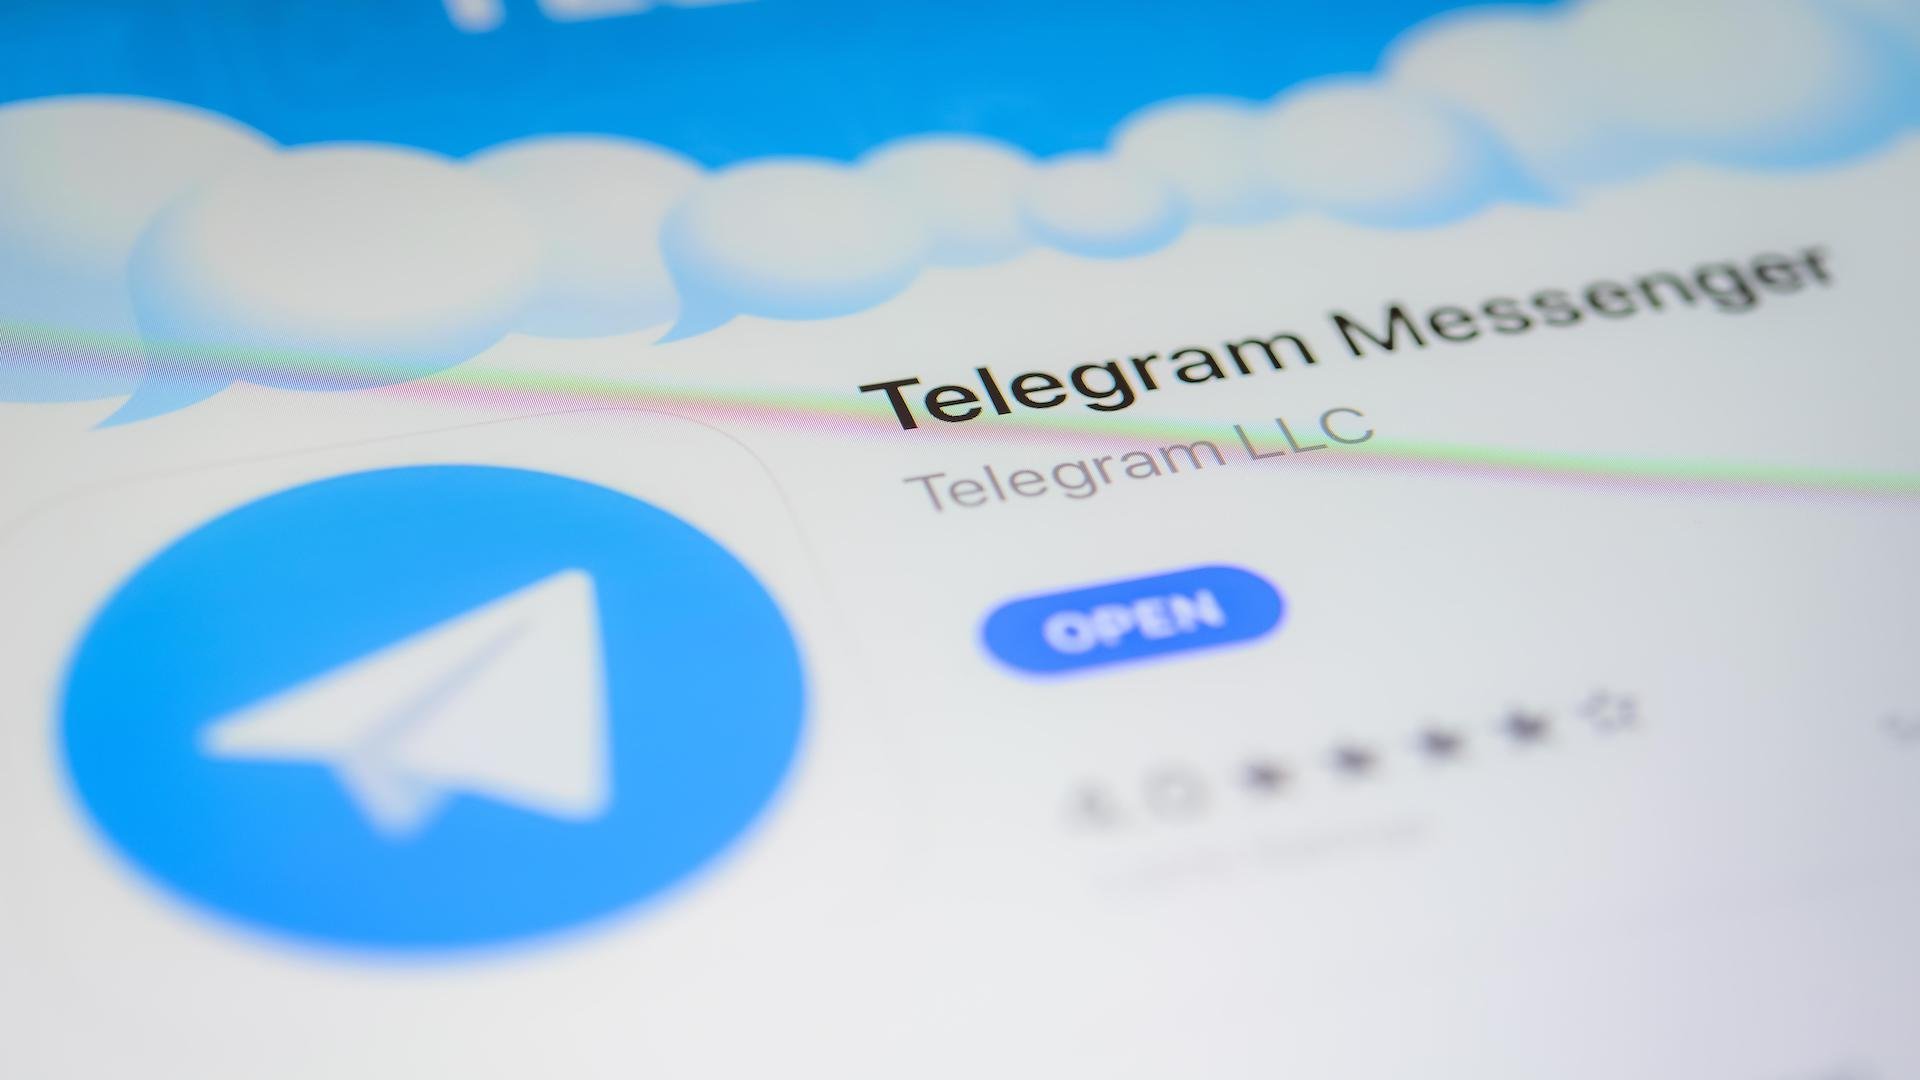 Обновить телеграмм на андроид до последней версии бесплатно на русском языке с официального сайта фото 40